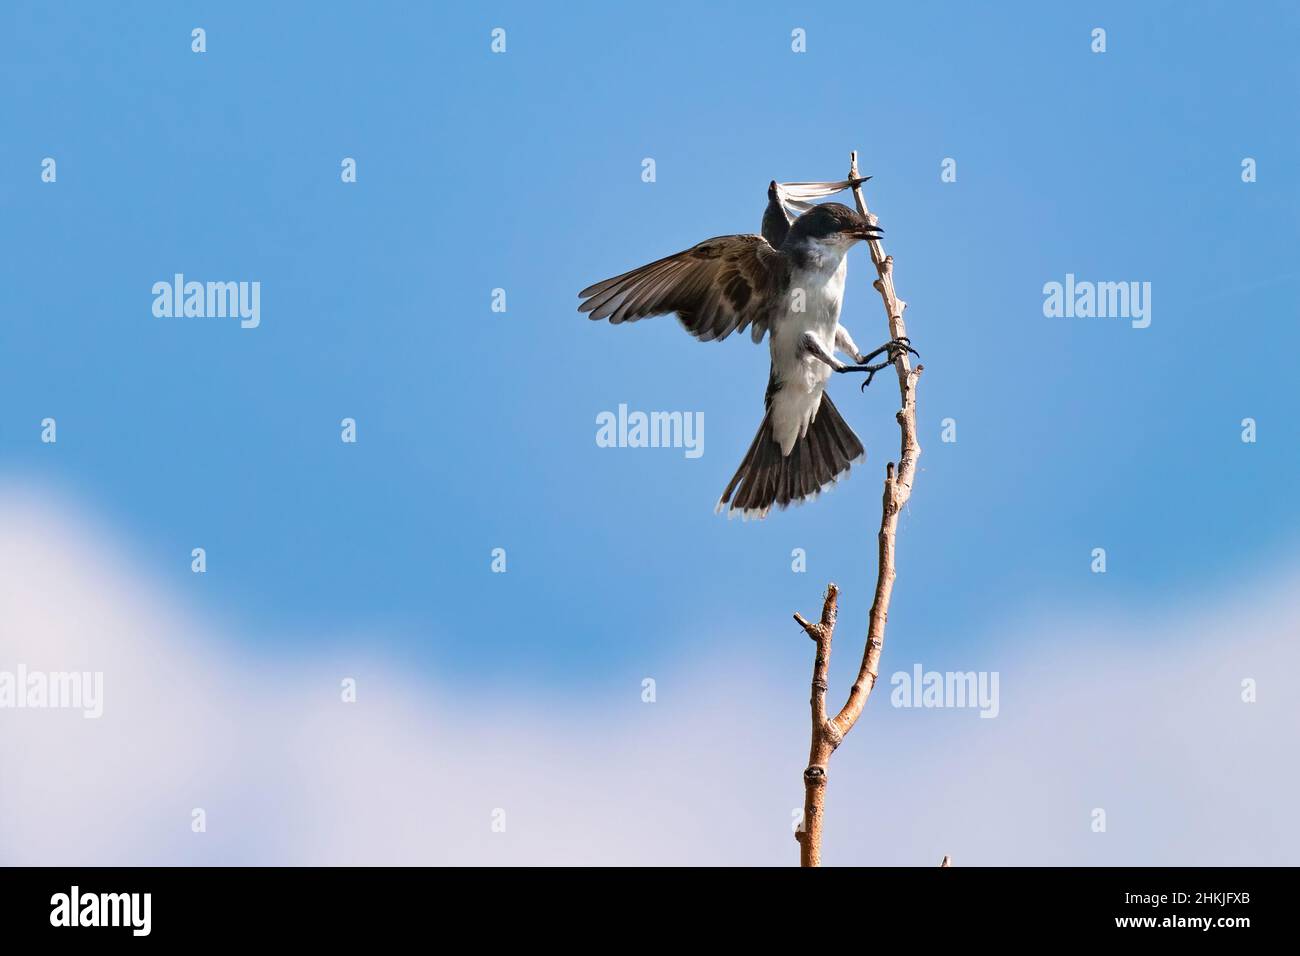 Un Kingbird del Este que se prepara para aterrizar en una rama delgada y alta enmarcada por el cielo azul por encima y las nubes blancas suaves por debajo. Foto de stock